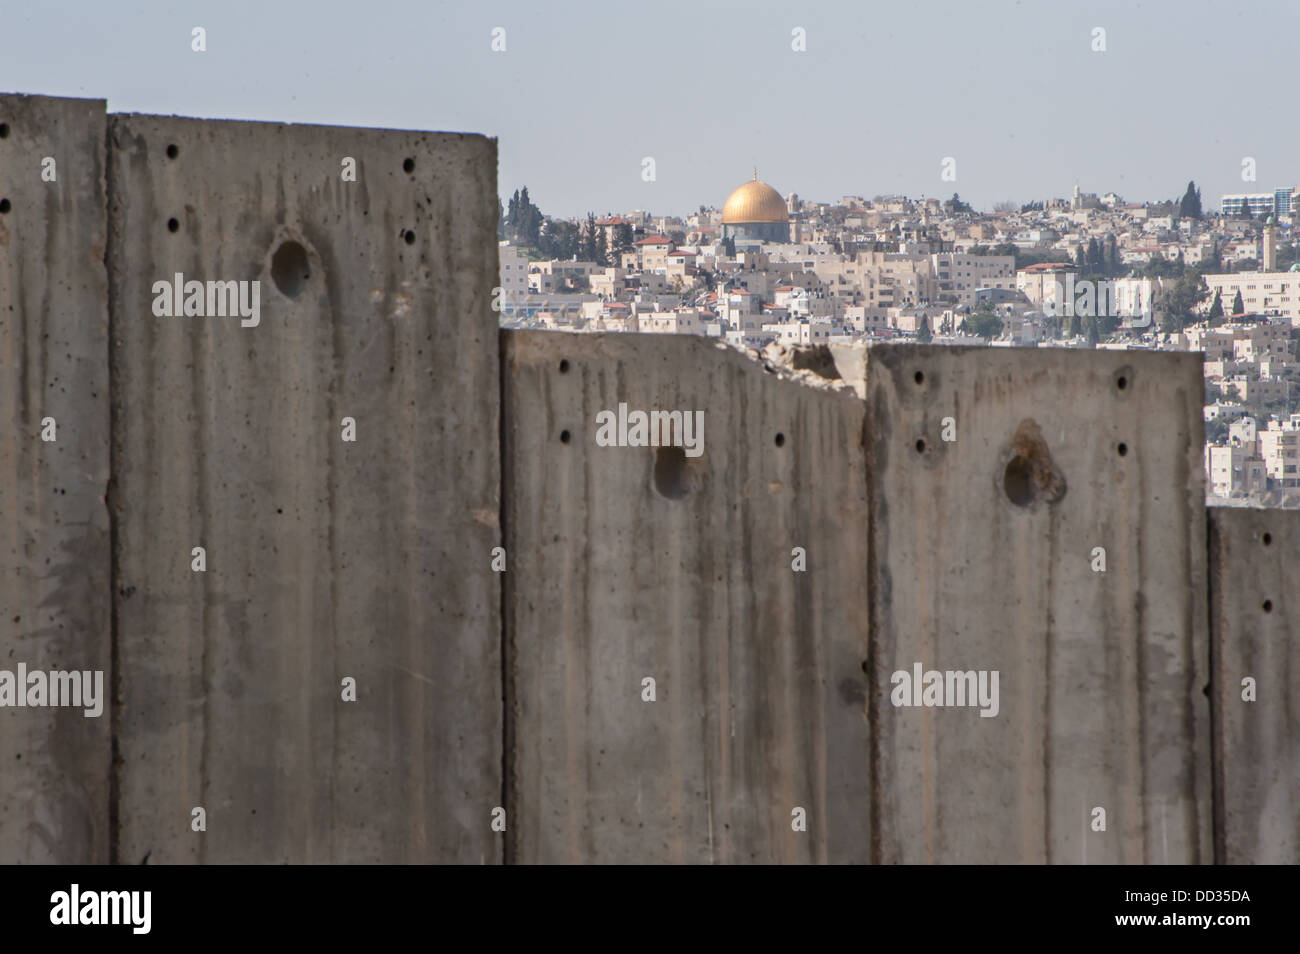 Le dôme du Rocher est visible sur le mur de séparation israélien divisant territoire palestinien occupé dans la ville d'Abu Dis. Banque D'Images